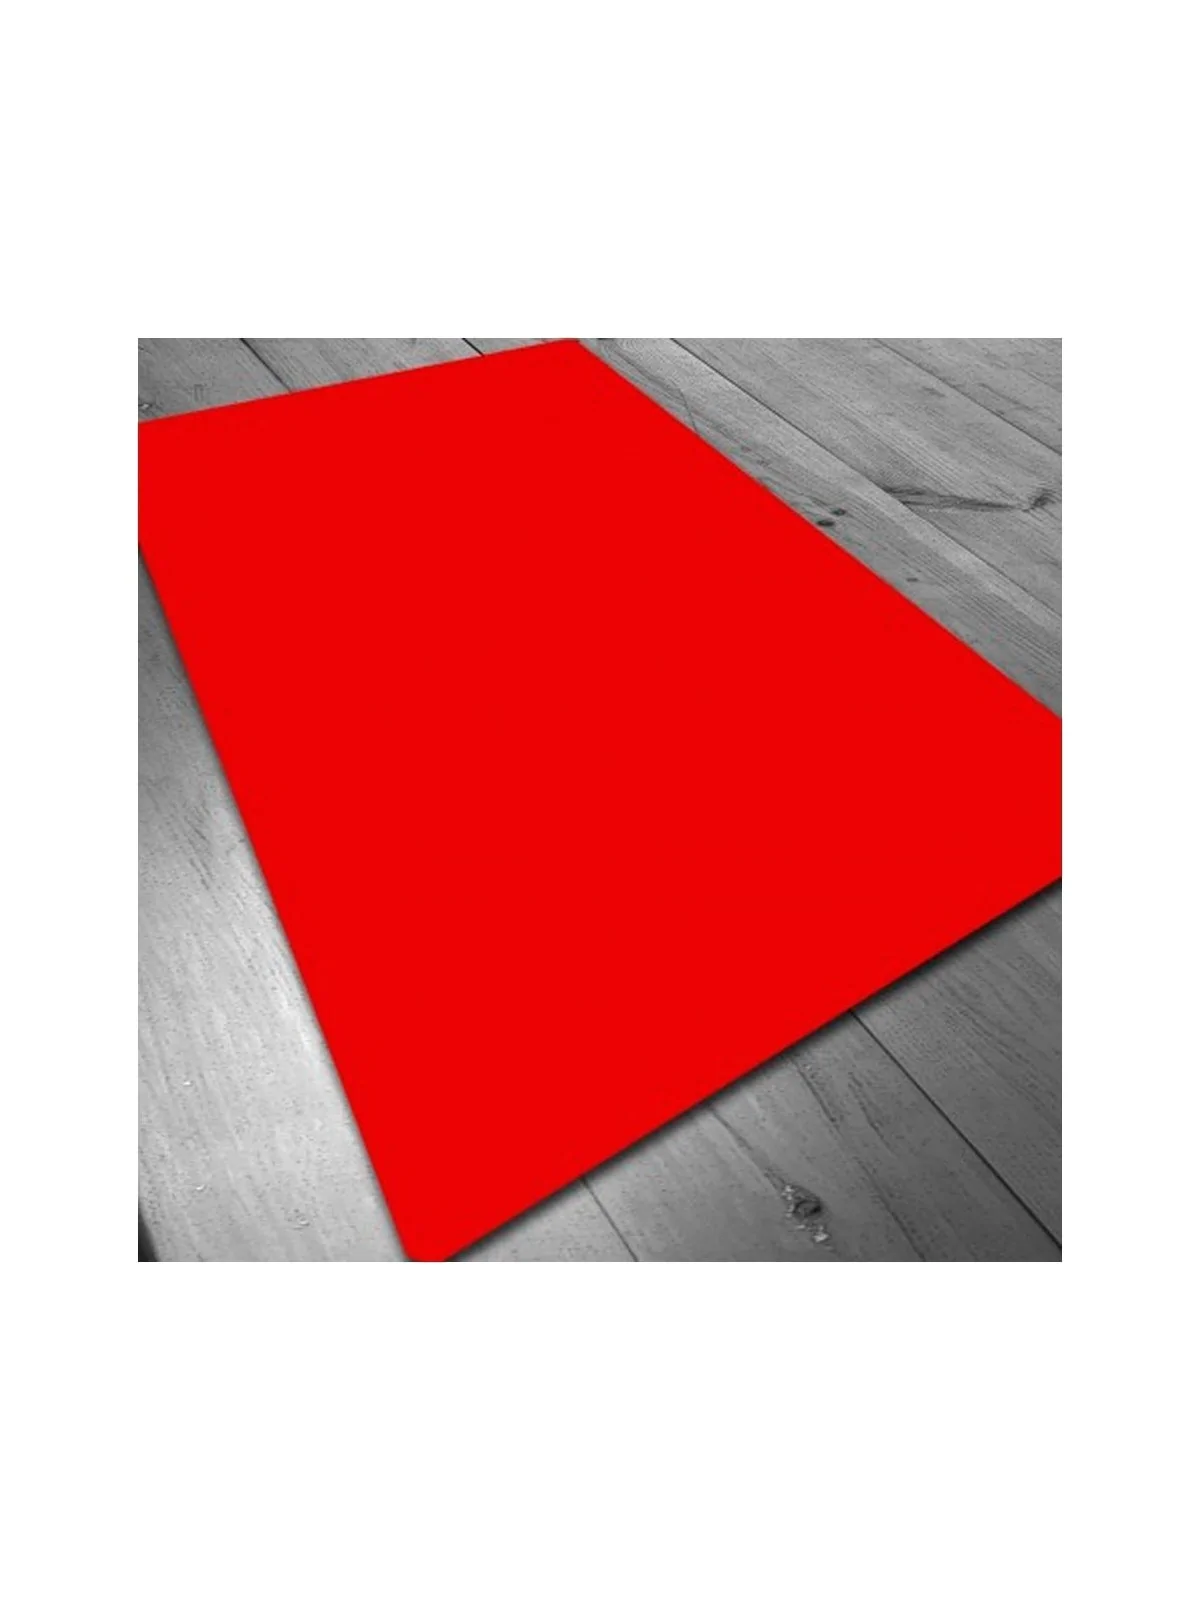 Comprar Tapete de Neopreno 140x80cm - Rojo Liso barato al mejor precio